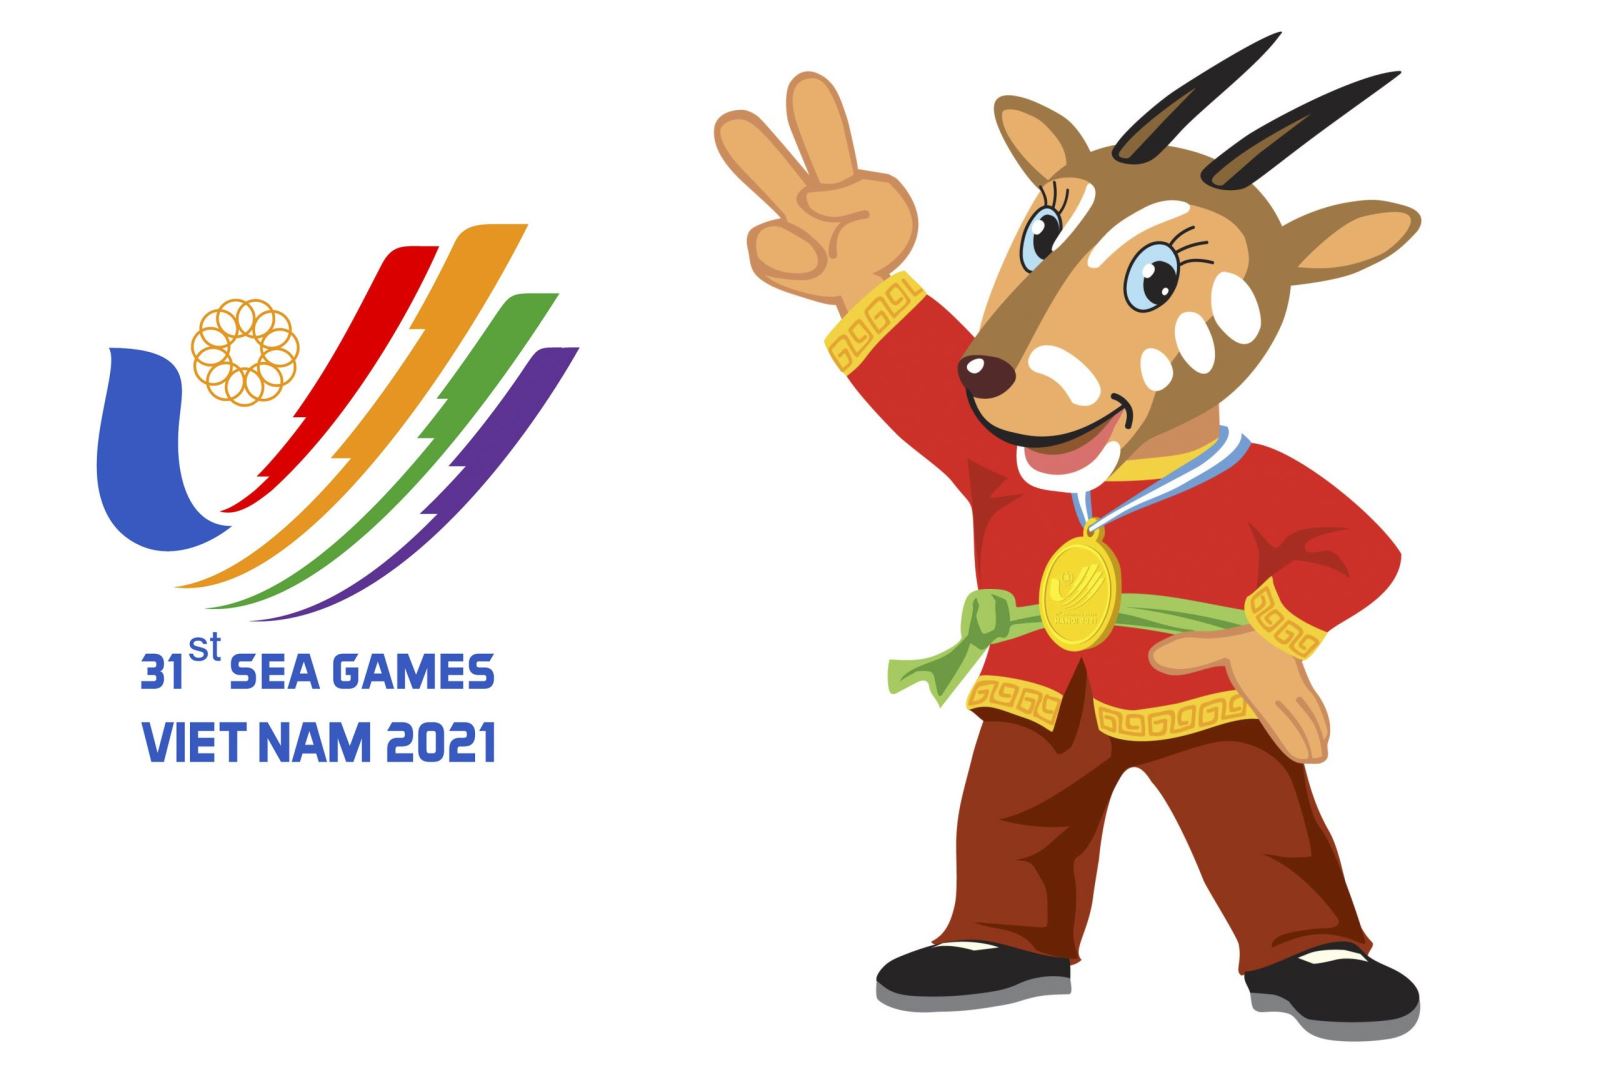 sea games 31 sai chính tả BTC SEA Games tiếp thu ý kiến đóng góp